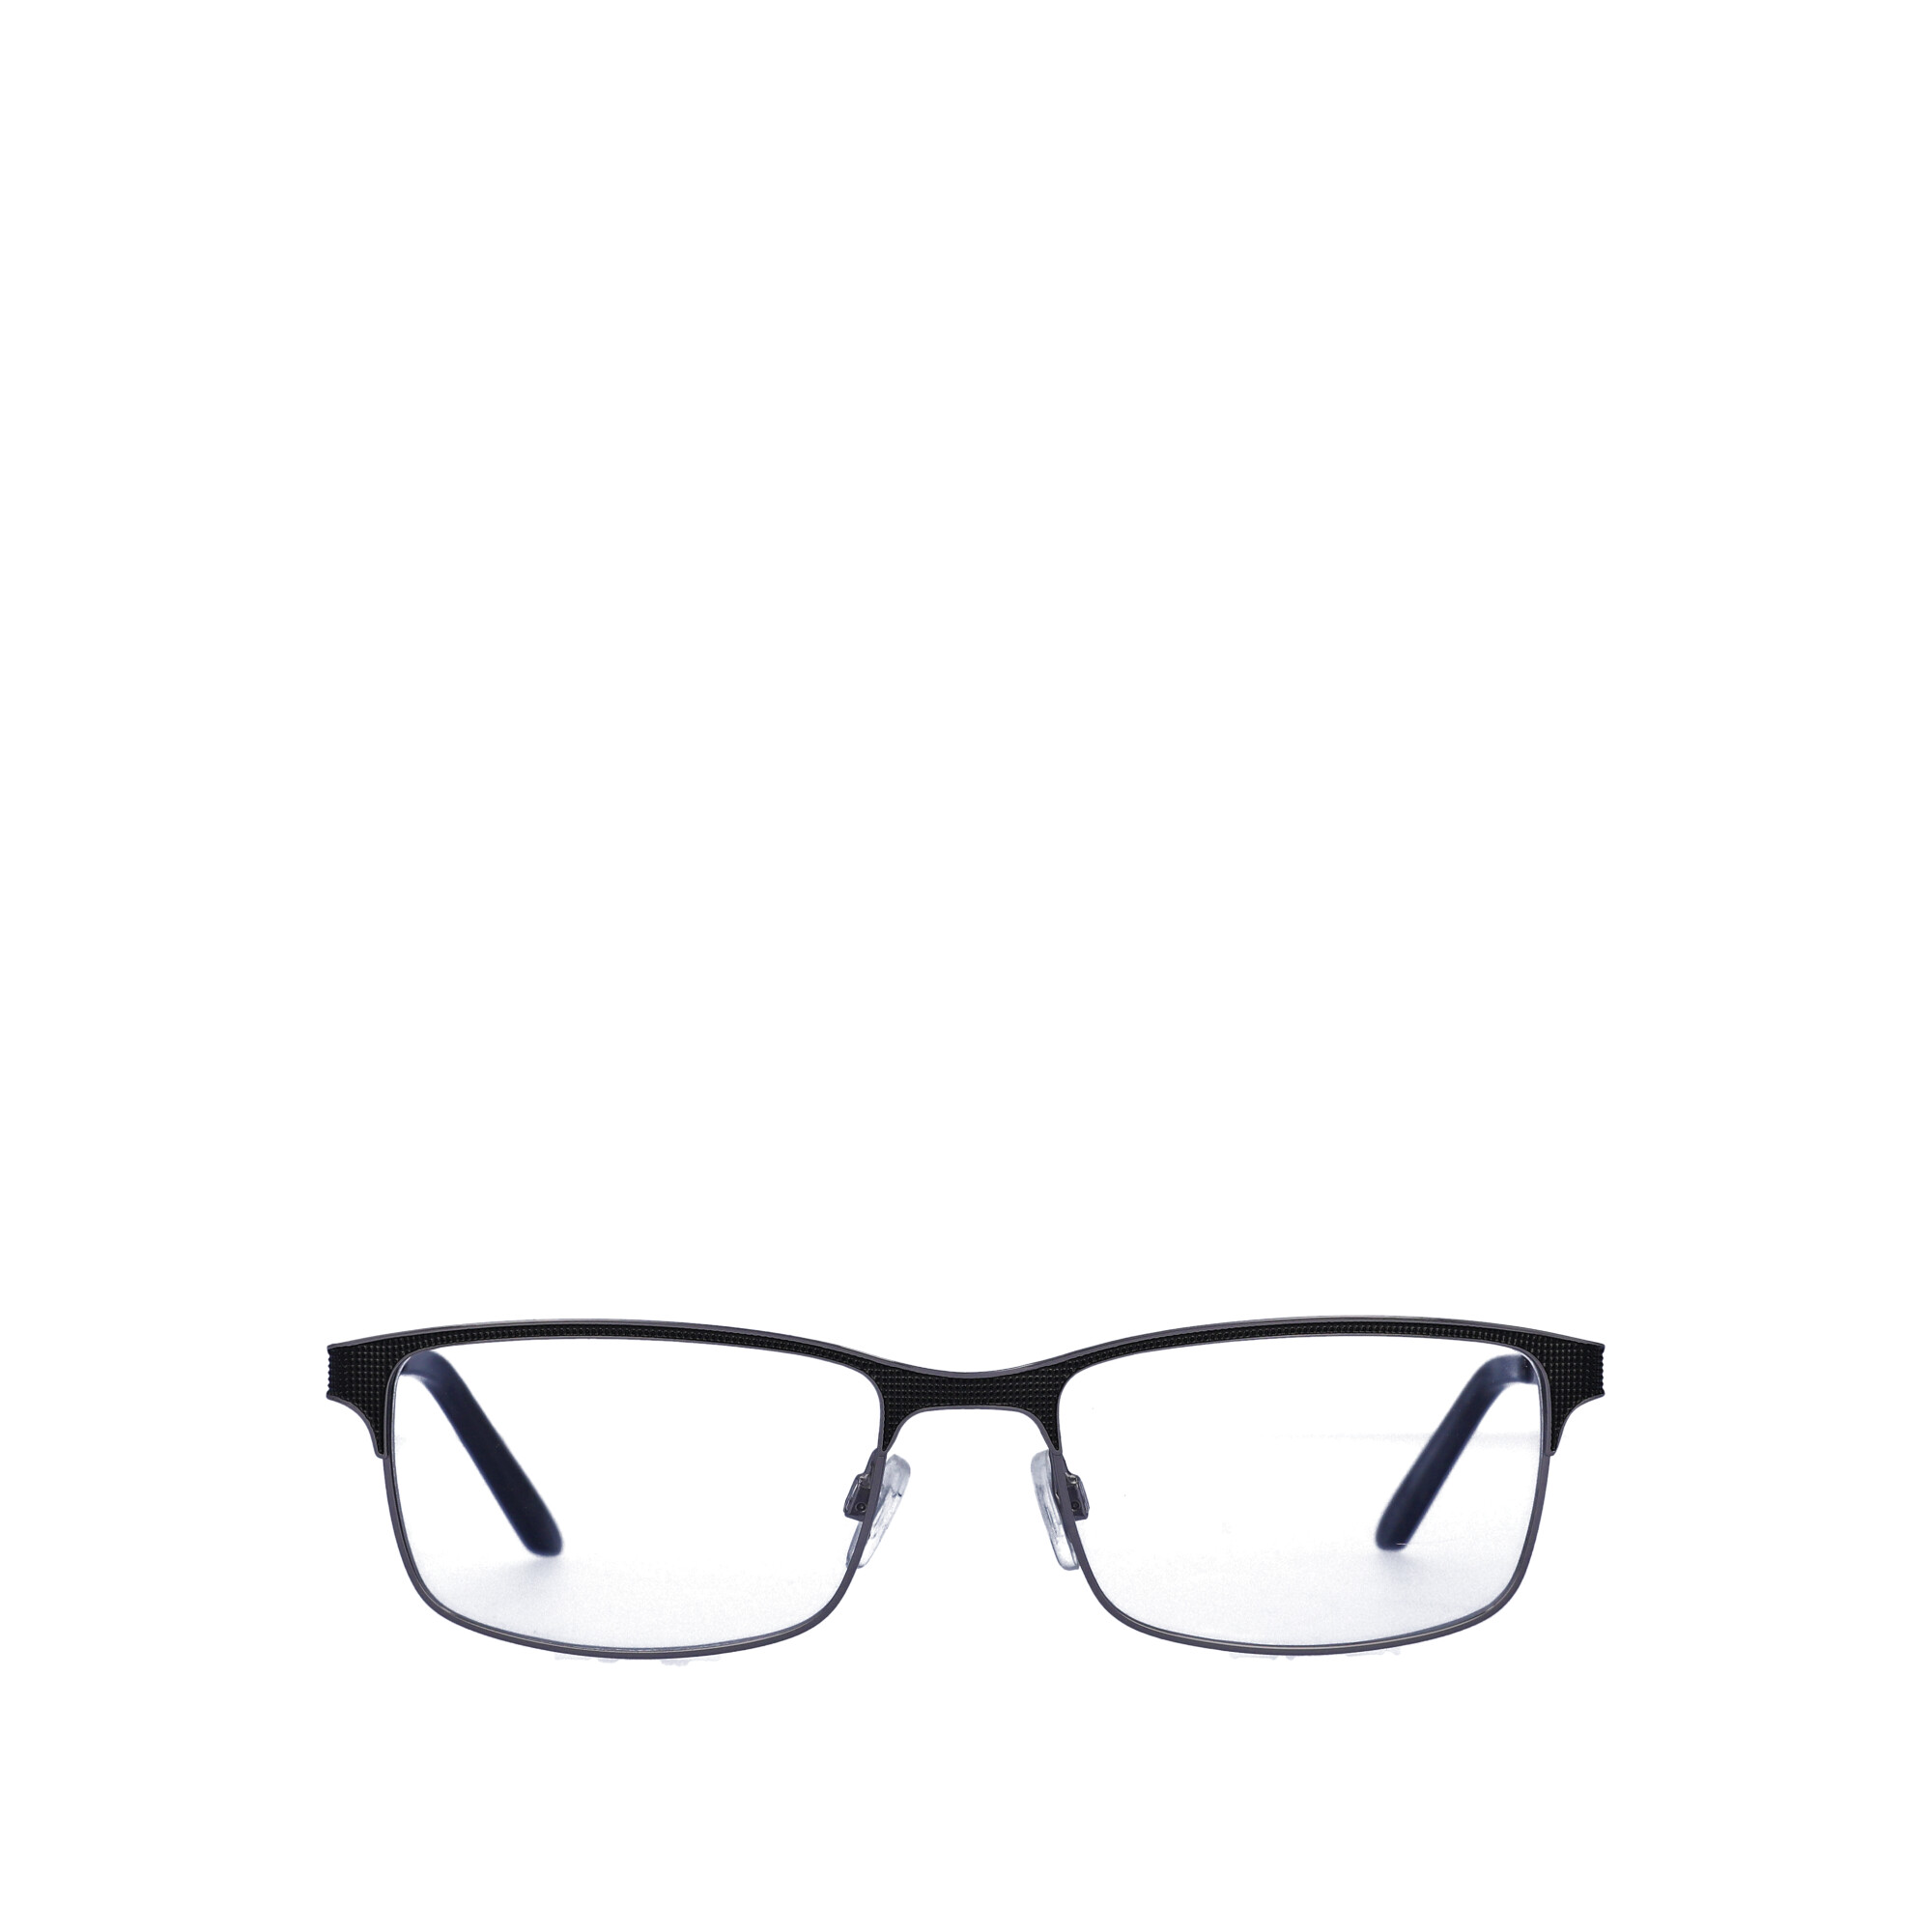 Walmart Men's Rx'able Eyeglasses, Mop41, Dark Grey, 54-18-145 - image 5 of 13